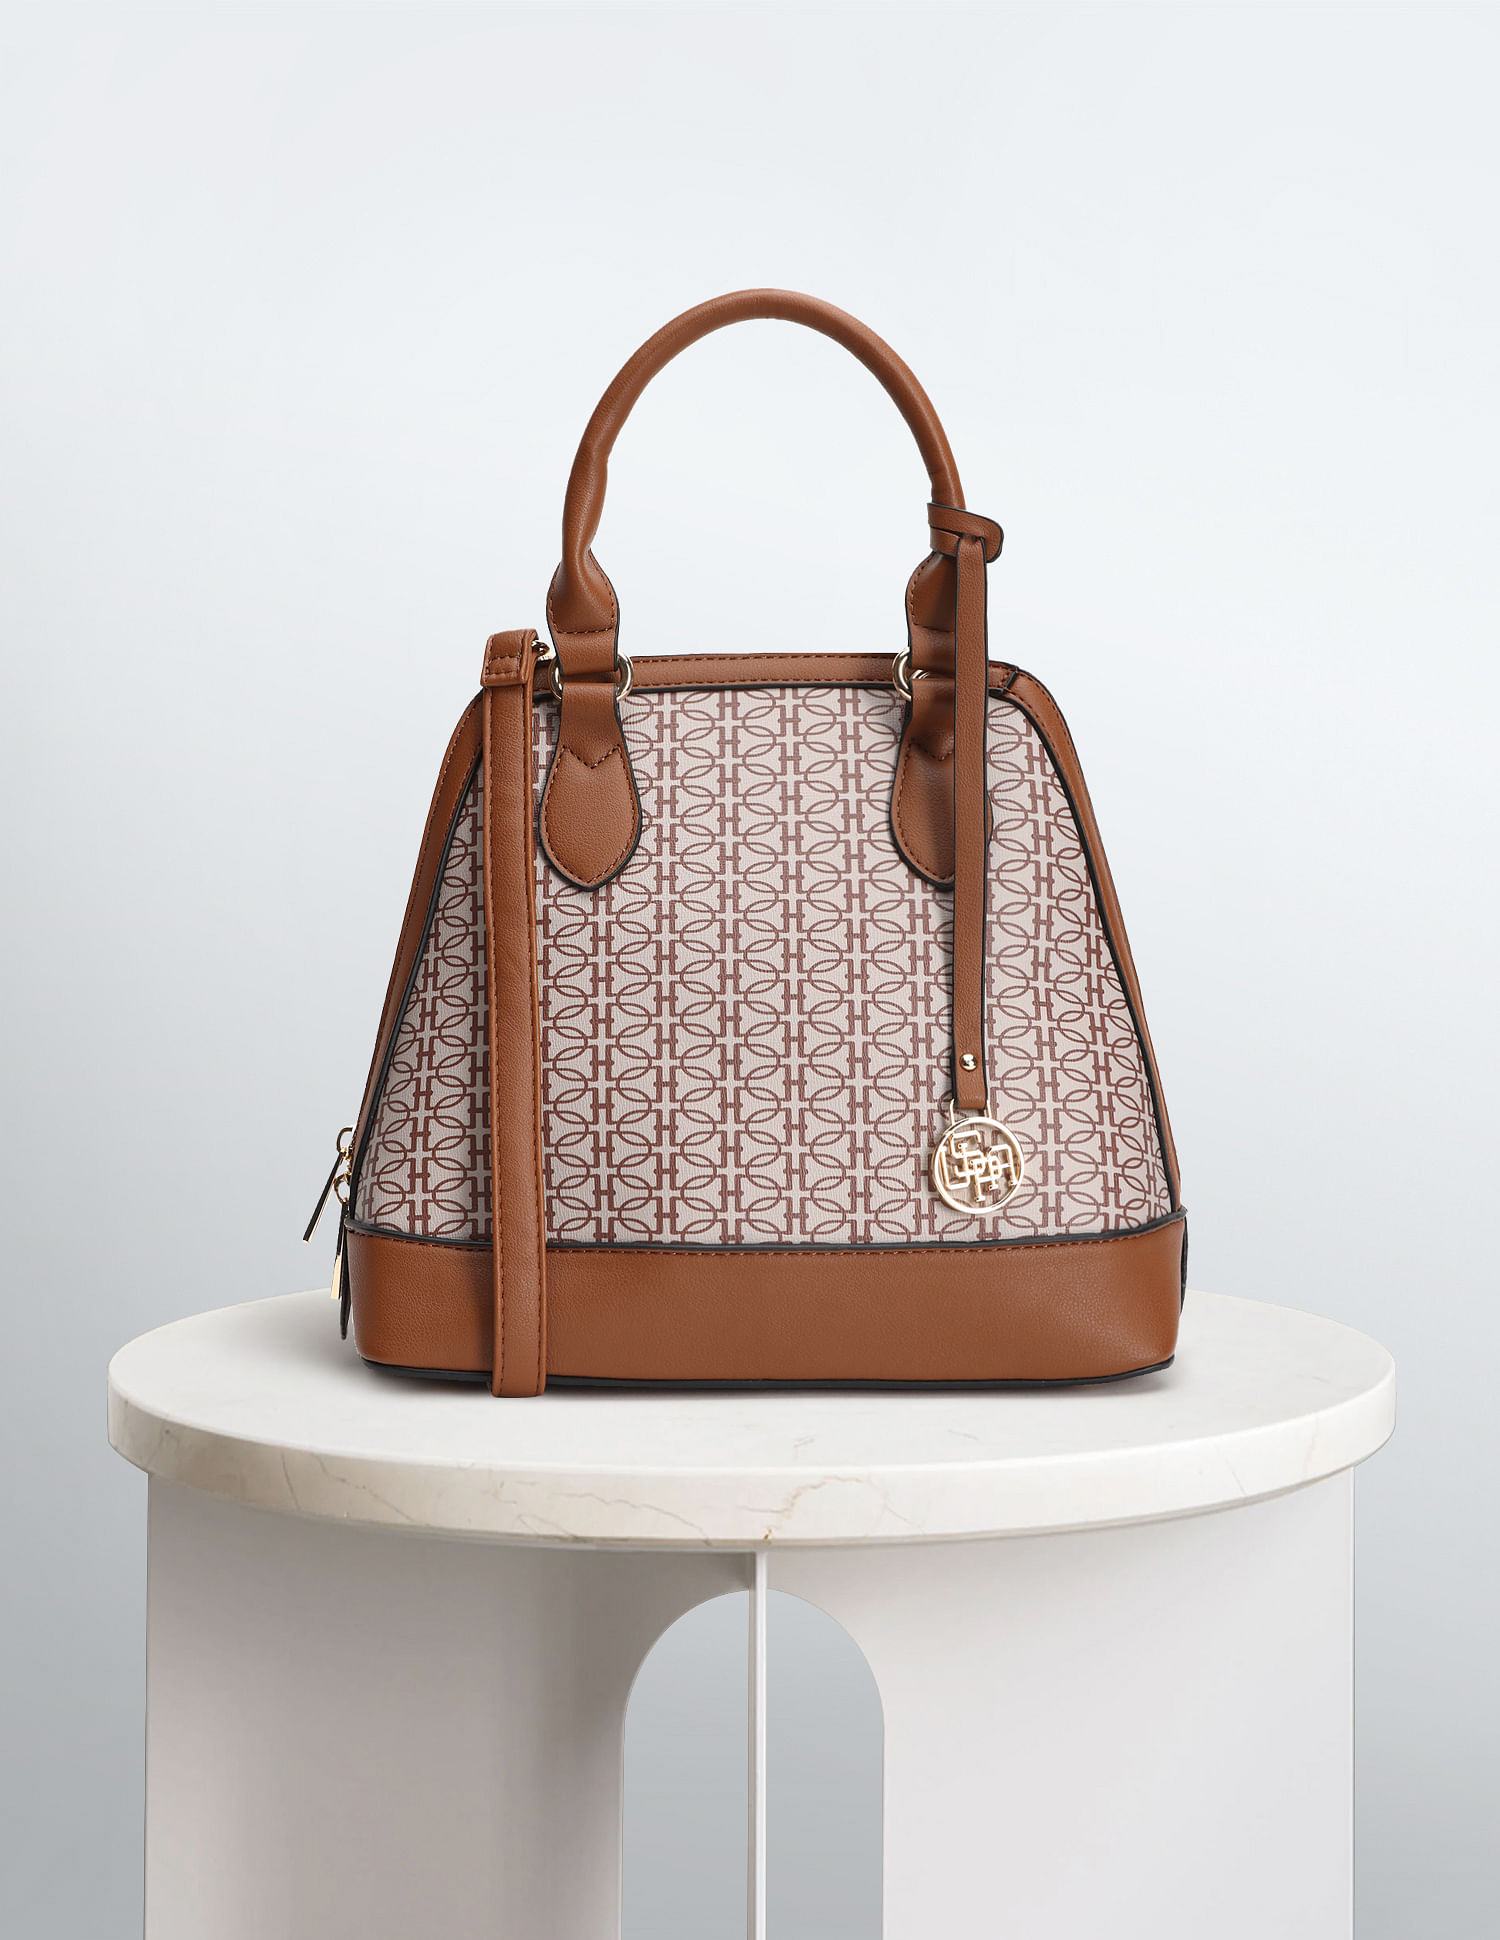 Universal Thread Structured Satchel Handbag in Cognac for sale online | eBay